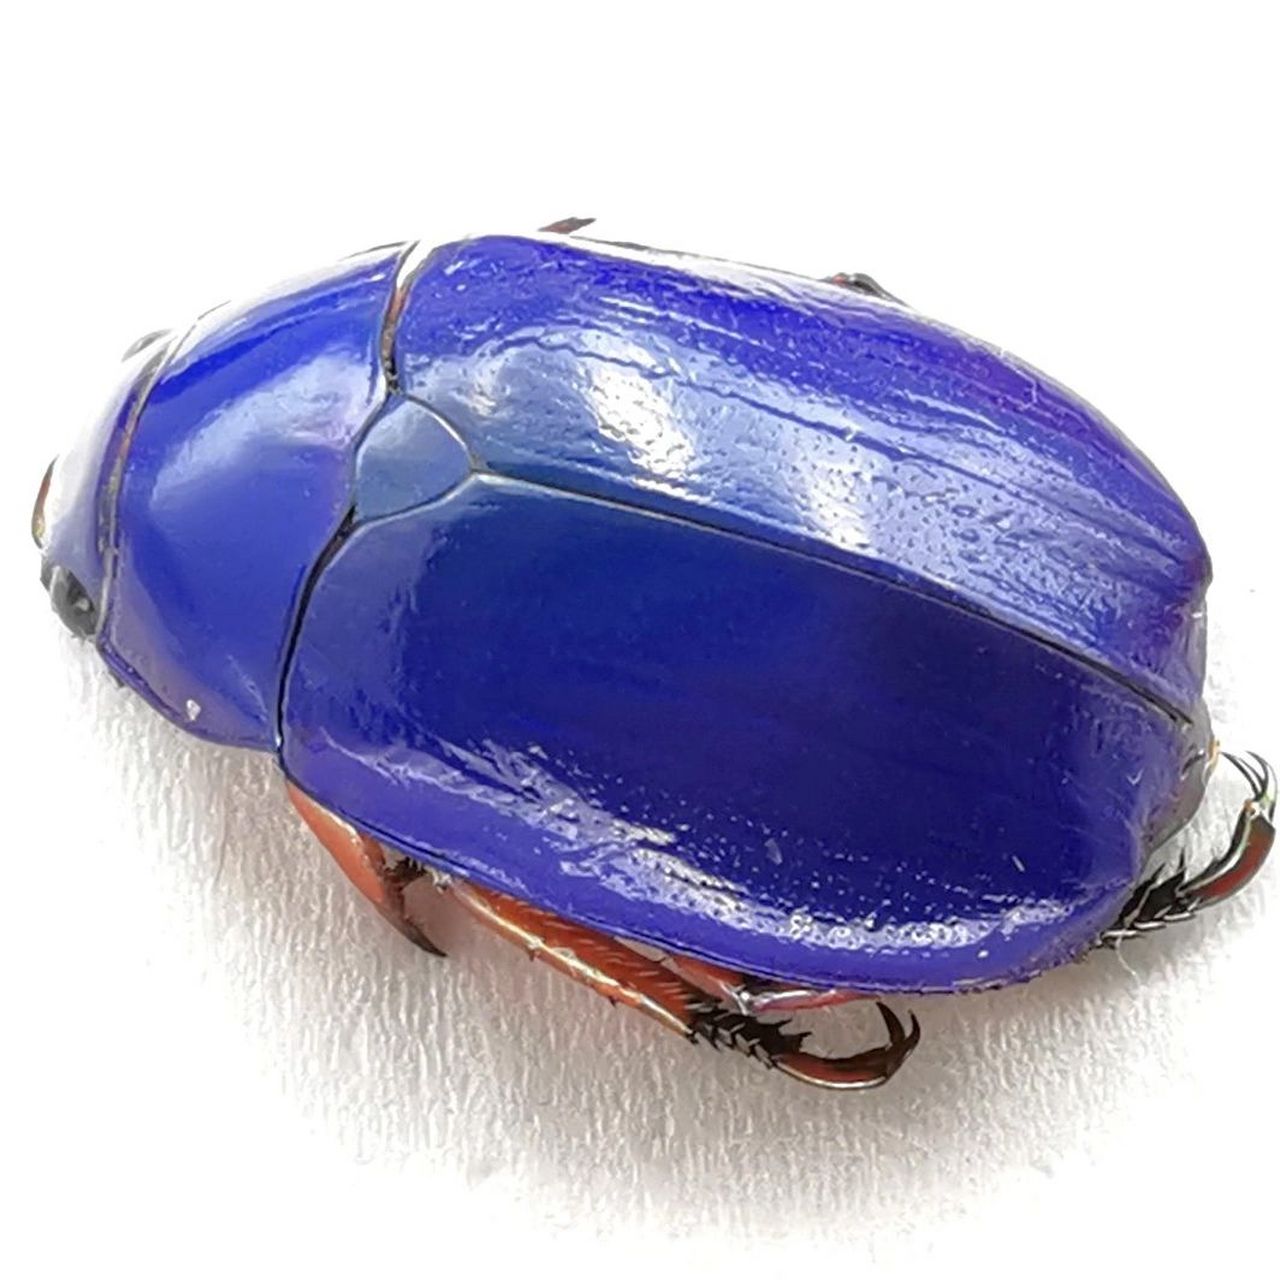 壳是蓝色的虫子图片